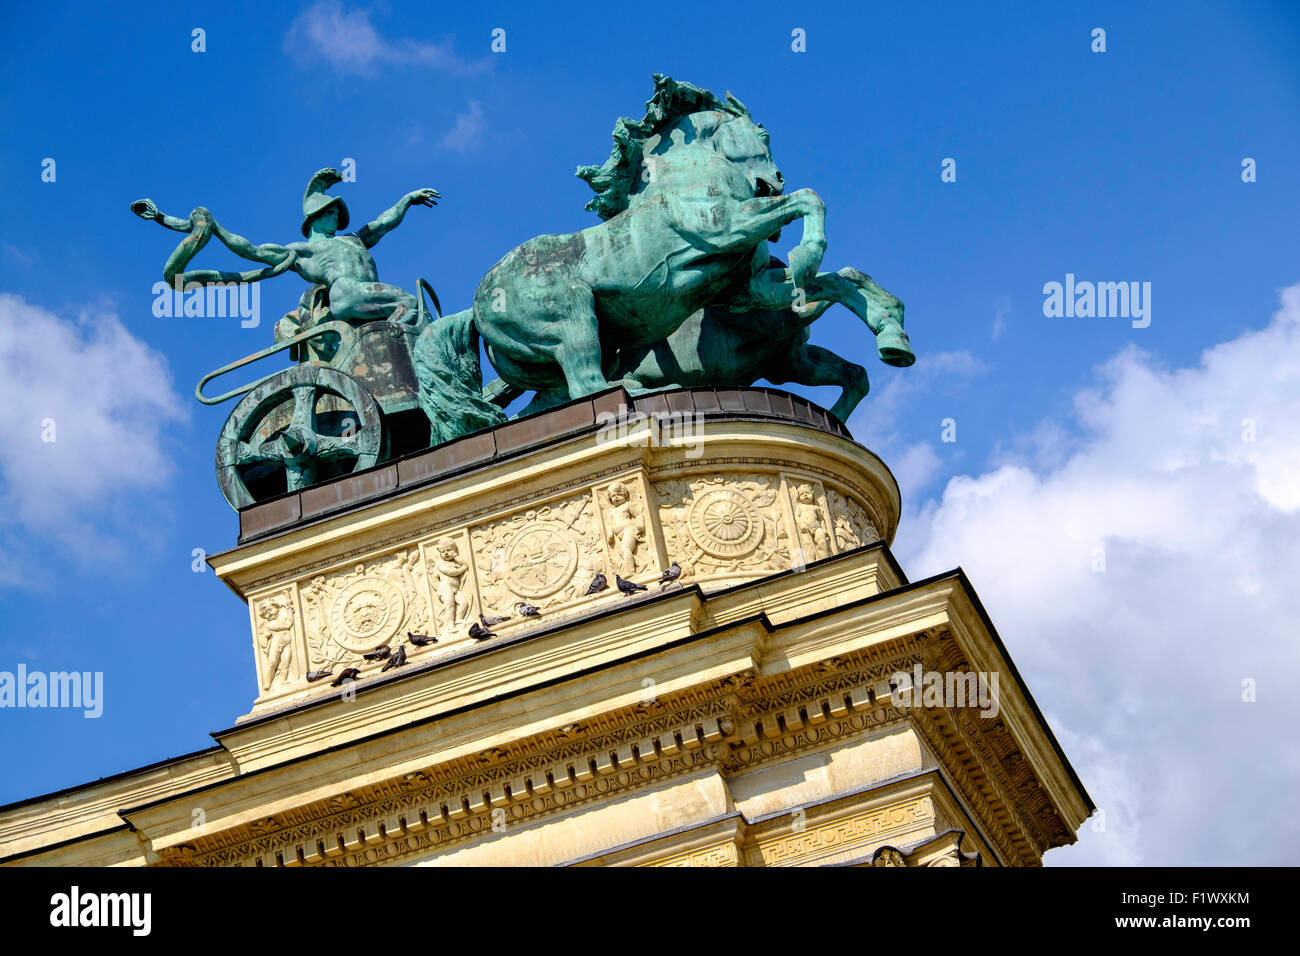 Partie de monument à la Place des Héros de Budapest, Hongrie. La statue de bronze de 'guerre' avec char et des chevaux se trouve en haut de la colonnade. Banque D'Images